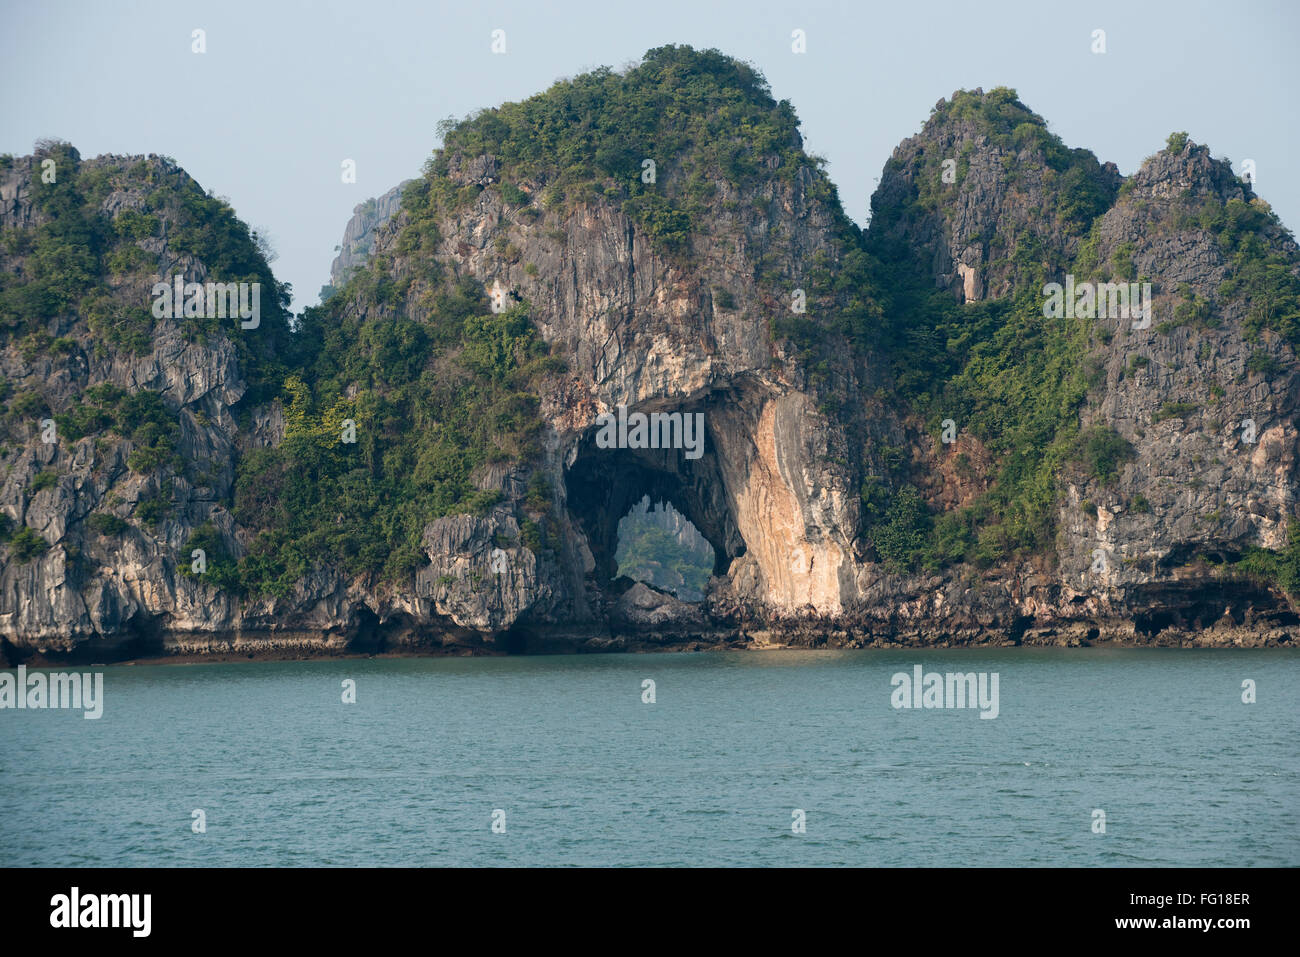 Kleine Kalkstein Karst, der Rest der Insel steigt aus dem Meer in der Halong Bucht mit einem Baum an der Spitze Stockfoto